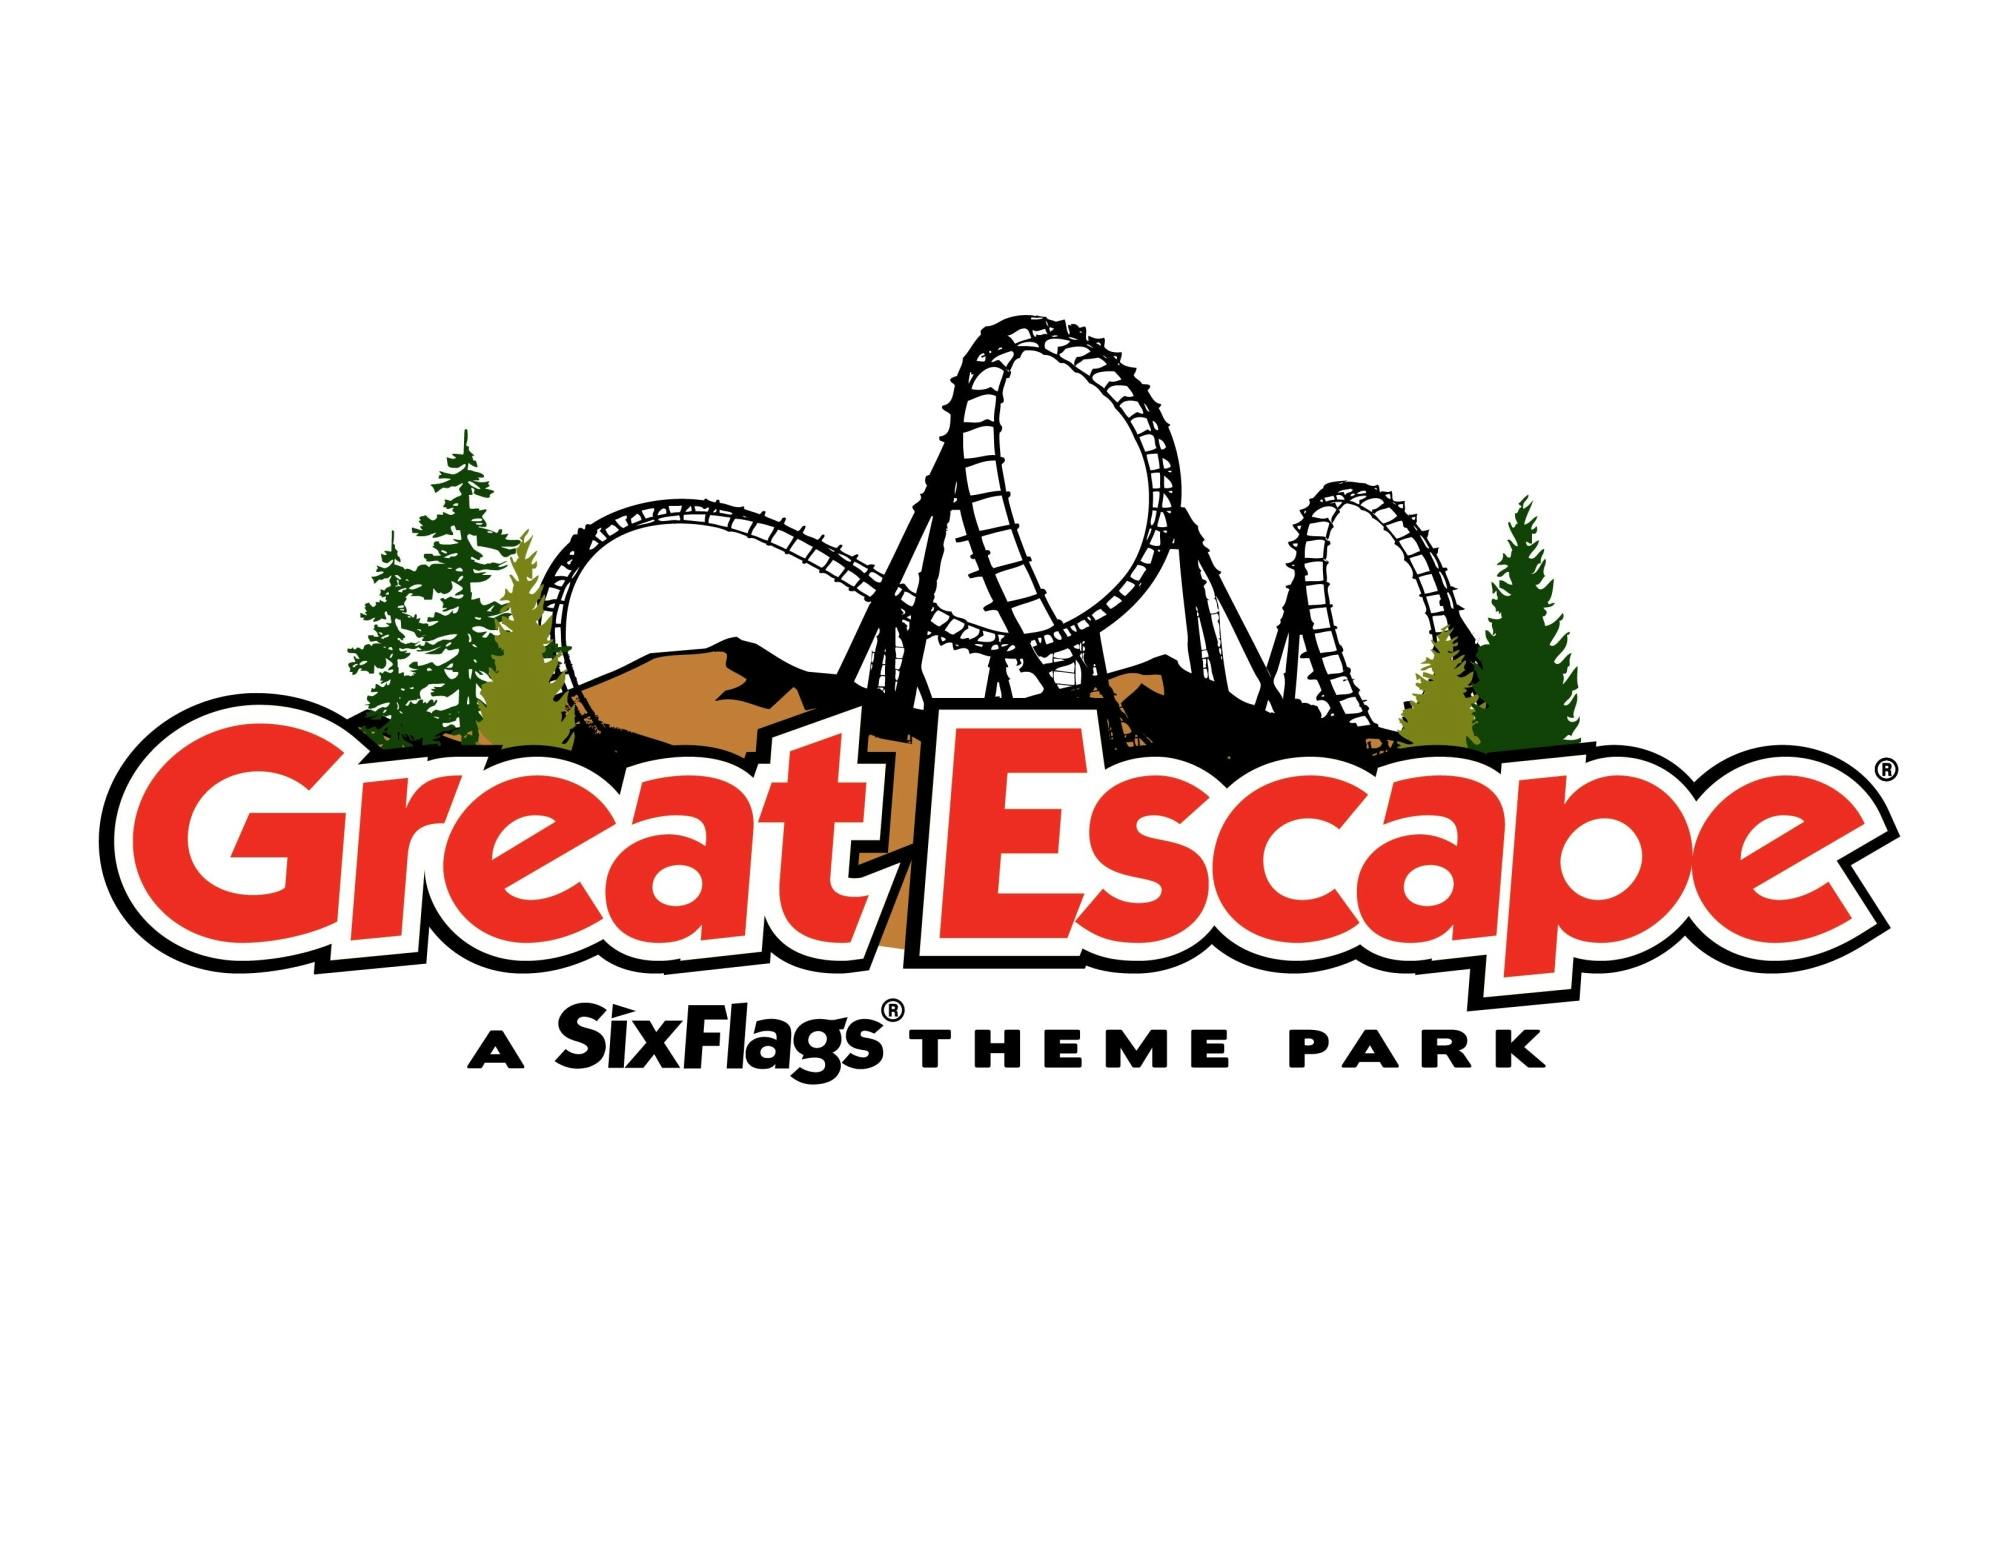 Biglietti d'ingresso per Six Flags The Great Escape e Hurricane Harbour